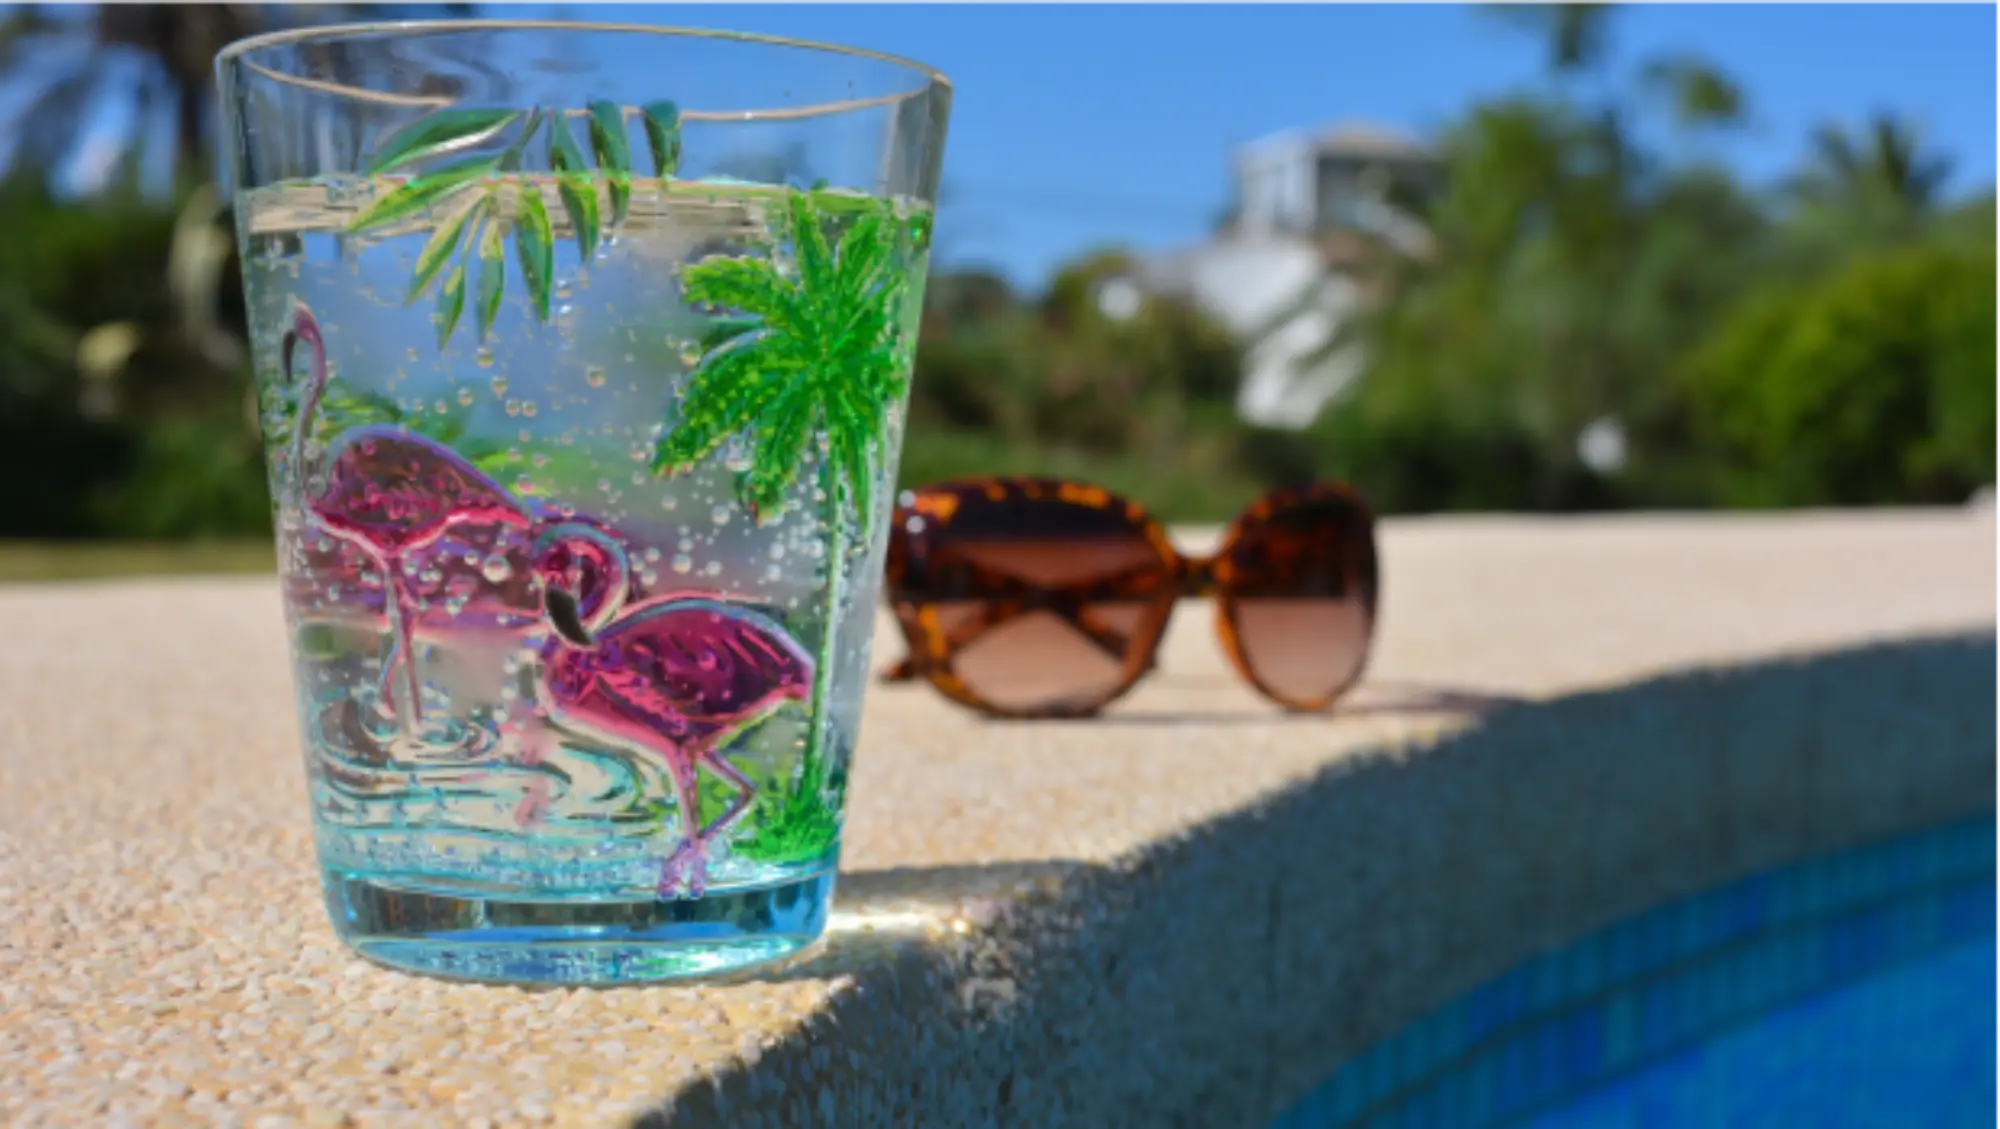 Szklanka na brzegu basenu, w tle okulary przeciwsłoneczne